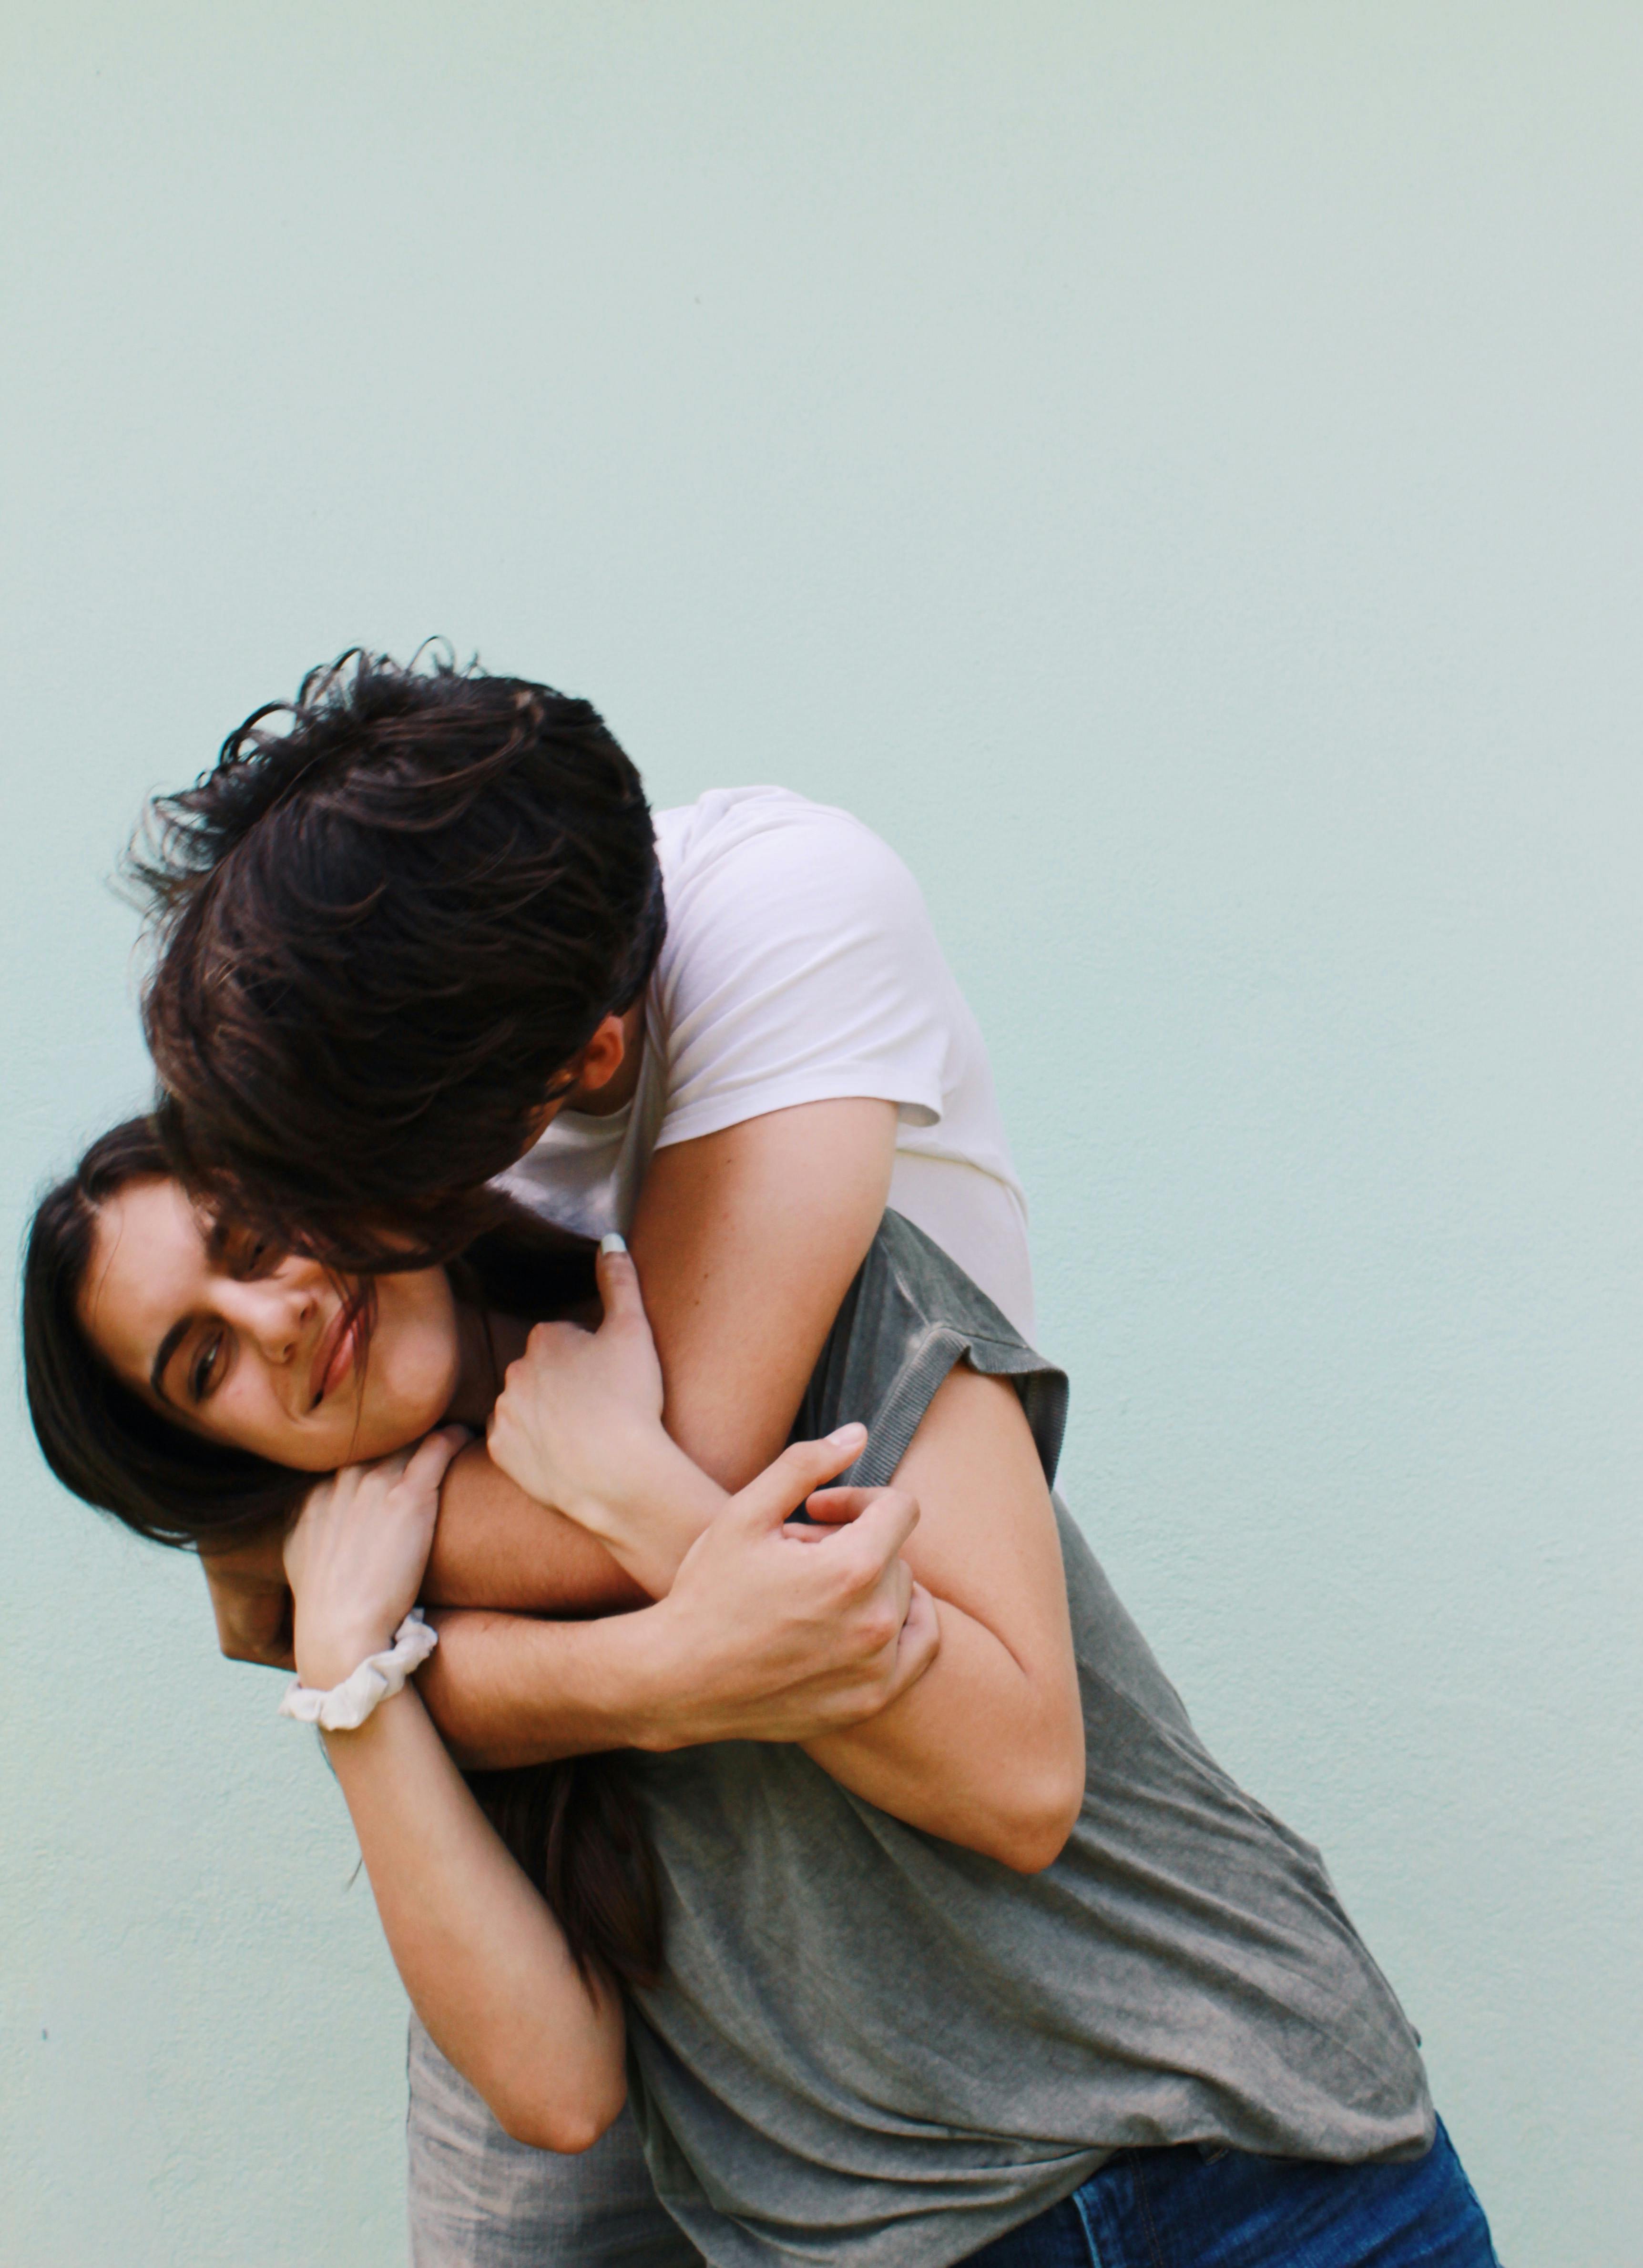 Un hombre besando y abrazando a una mujer de aspecto contrariado | Fuente: Pexels